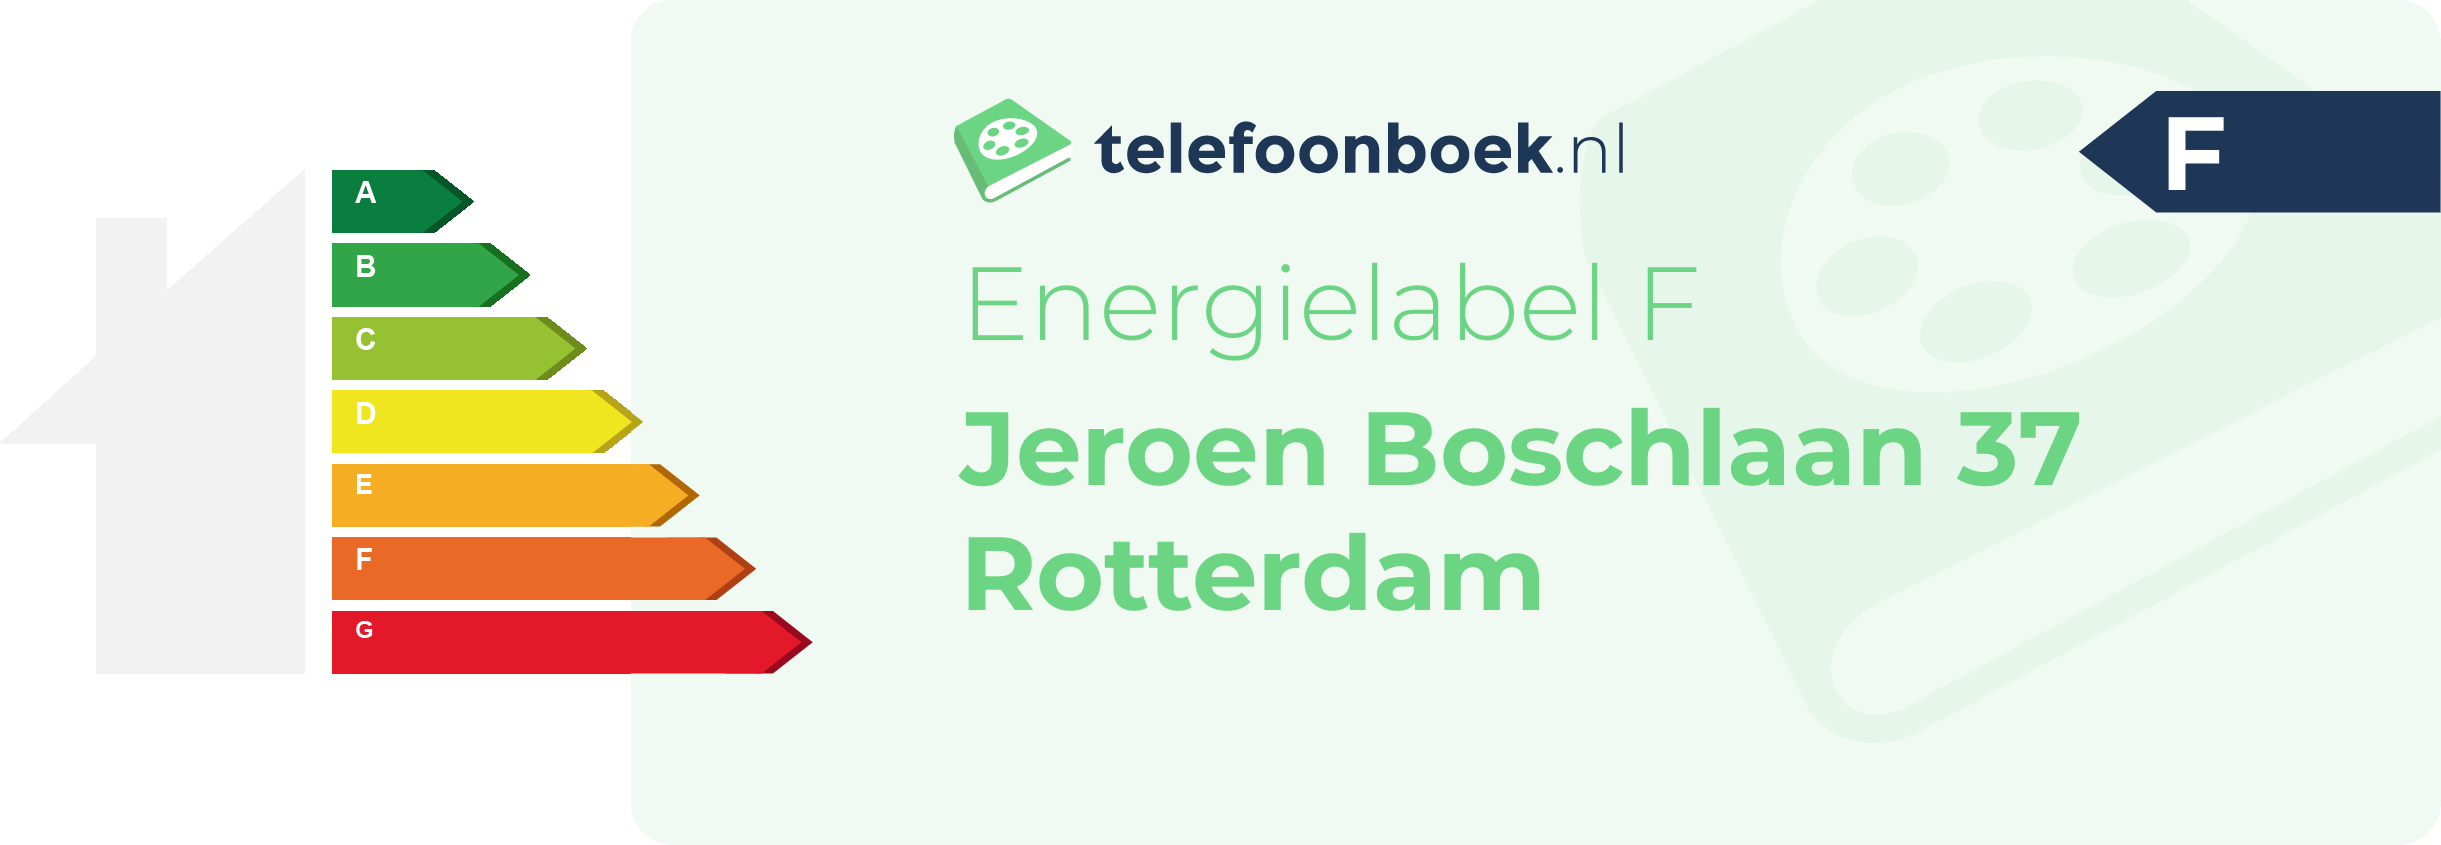 Energielabel Jeroen Boschlaan 37 Rotterdam